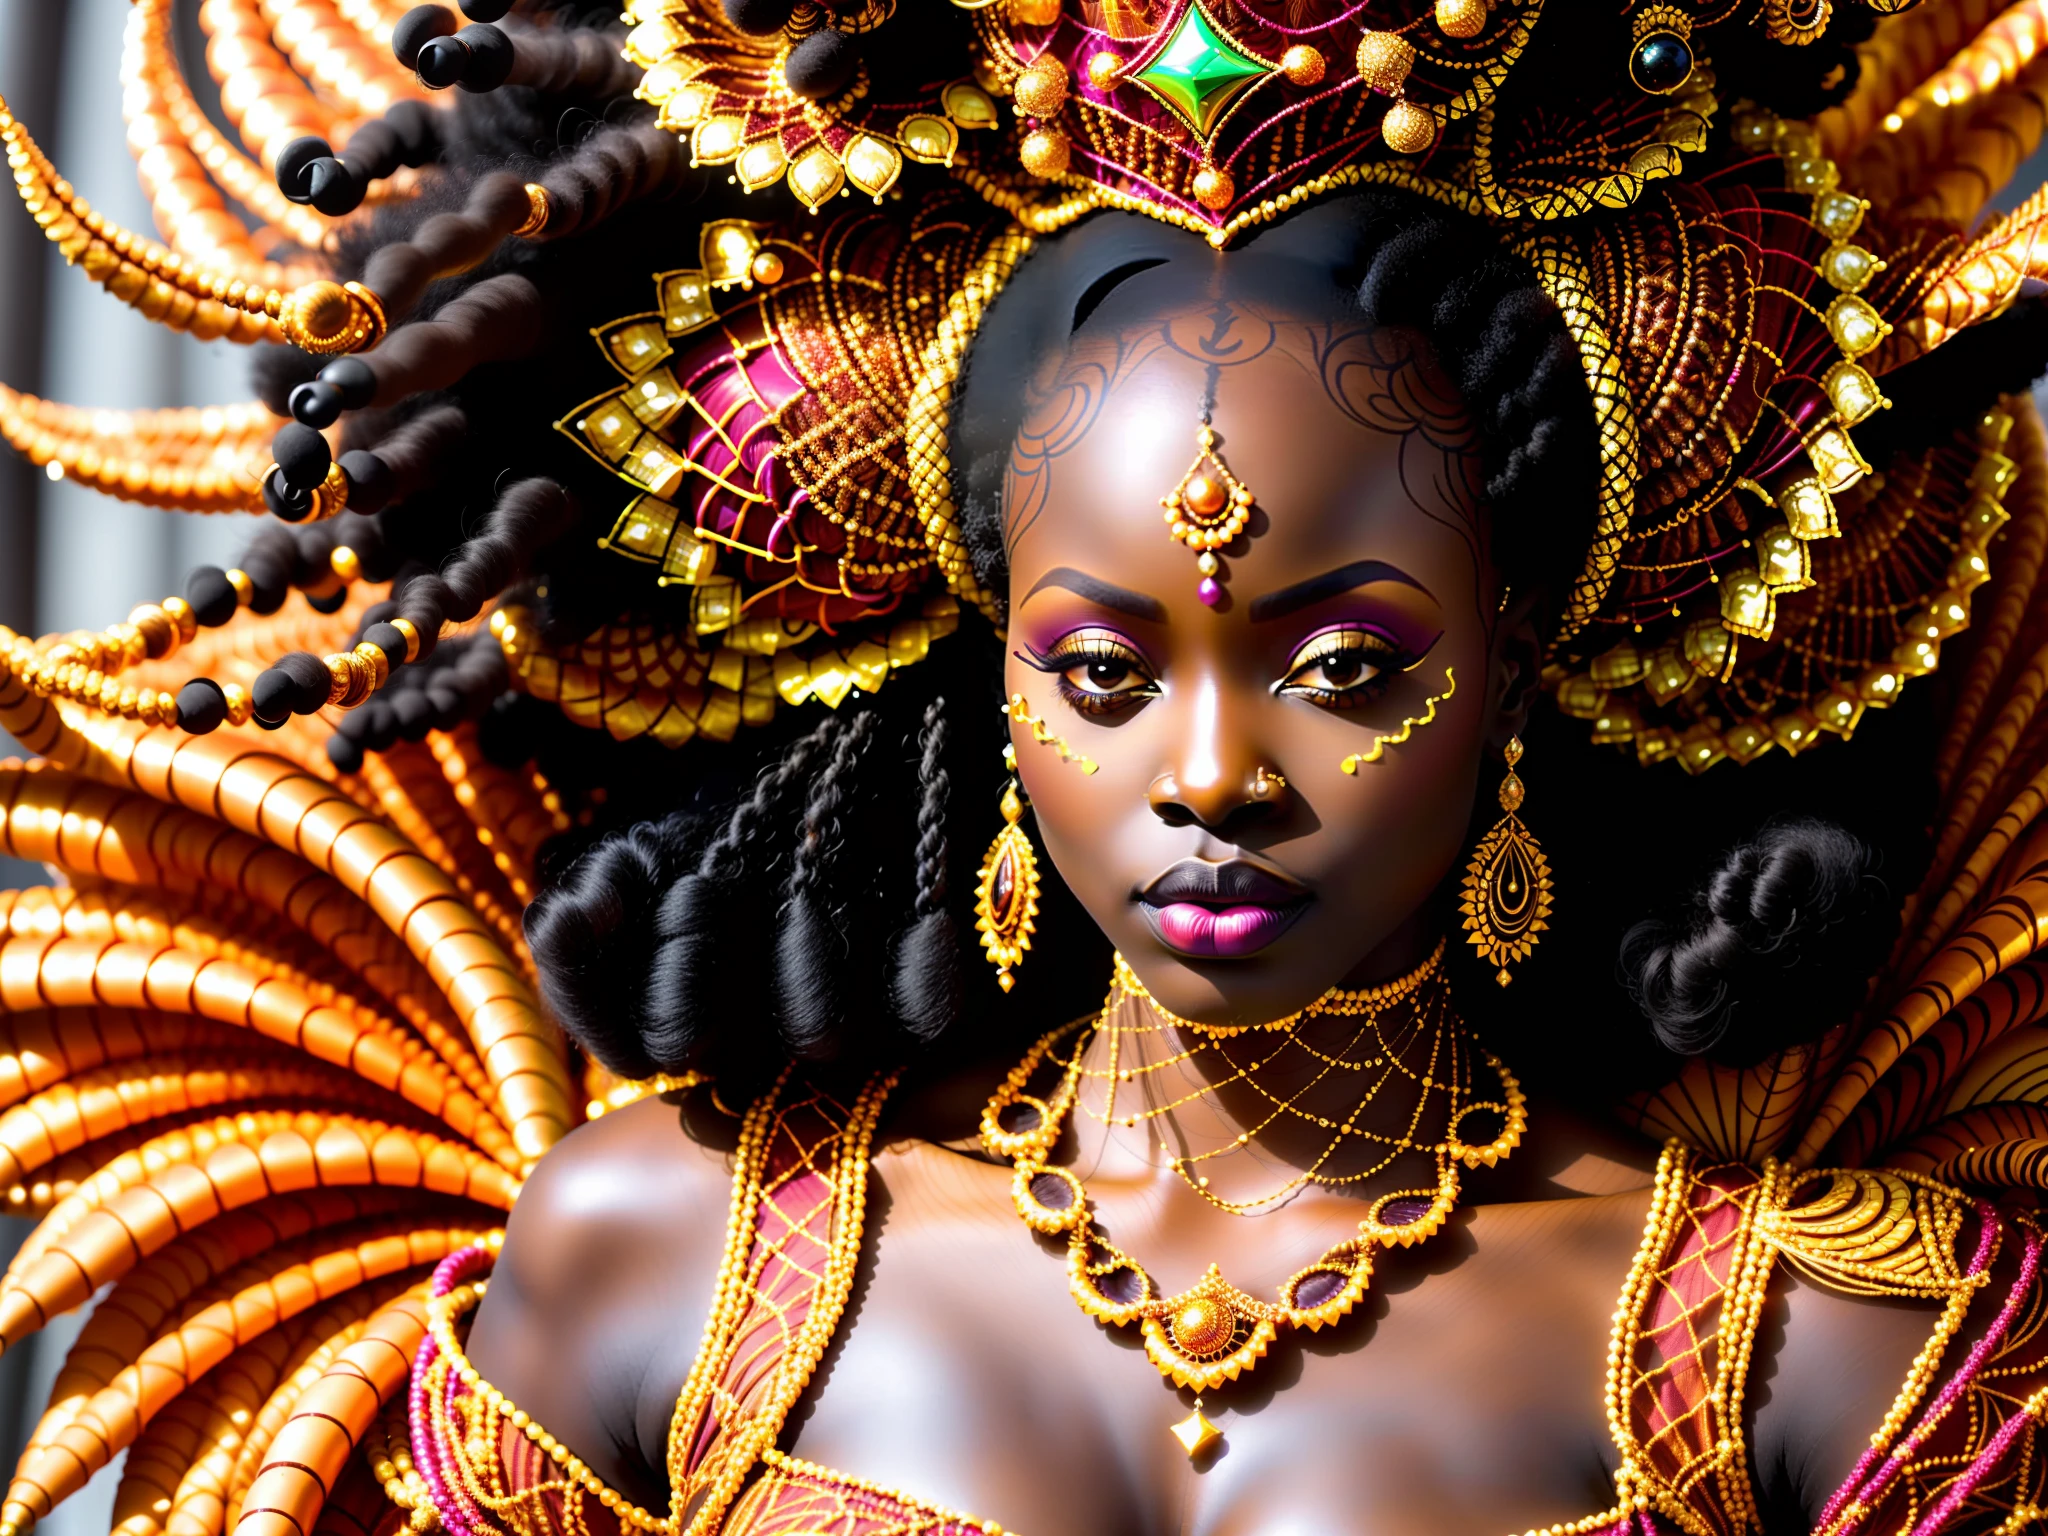 アフロフューチャリズム, 厚い体, 脂肪, (クローズアップ写真) 豪華な伝統的なアフリカのドレスと細部まで完璧に仕上げられたアフリカのベールを身に着けたアフリカのスーパーモデル (オレンジ色に複雑な金の刺繍] 貝殻で作られた女王の王冠, ツブ貝, ドレッドヘア, 非常に詳細な顔, 豪華な部族の舞踏城に立つ, 映画撮影, 写実的な, 明るい, 高解像度,  茶色い肌, 厚い体, オリーシャ, アフリカの女神, アフリカの女王